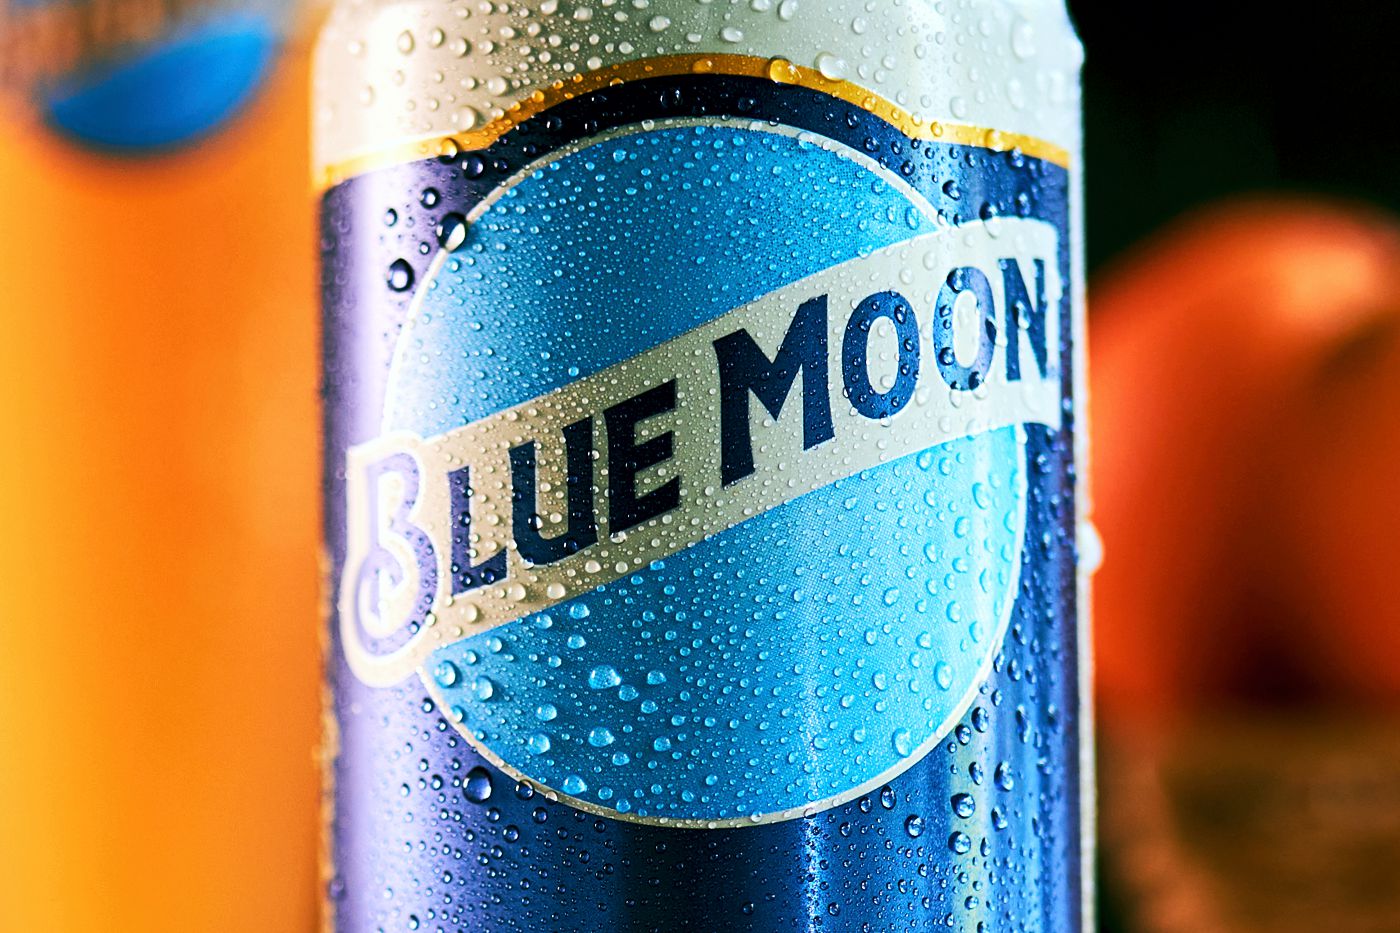 Lata de Blue Moon cerveza, con naranja